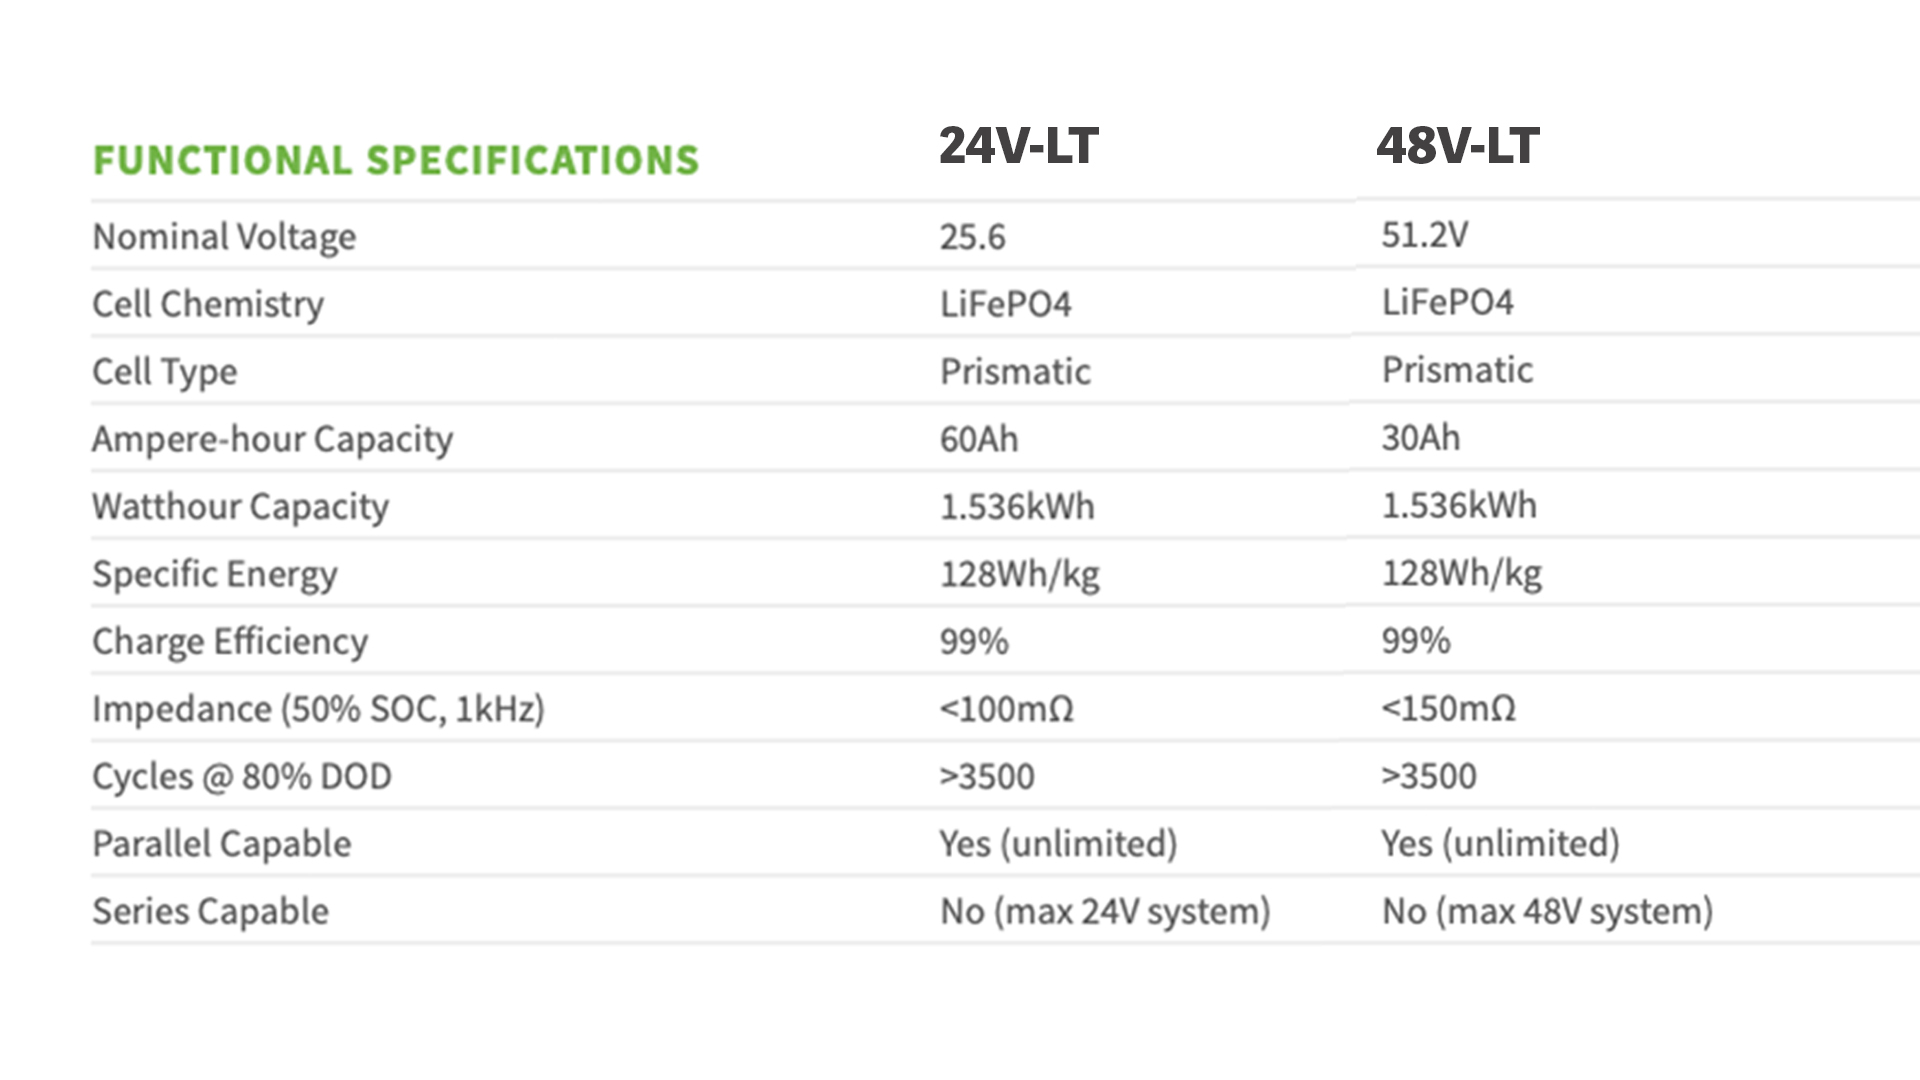 24V-LT vs 48V-LT Functional Specs